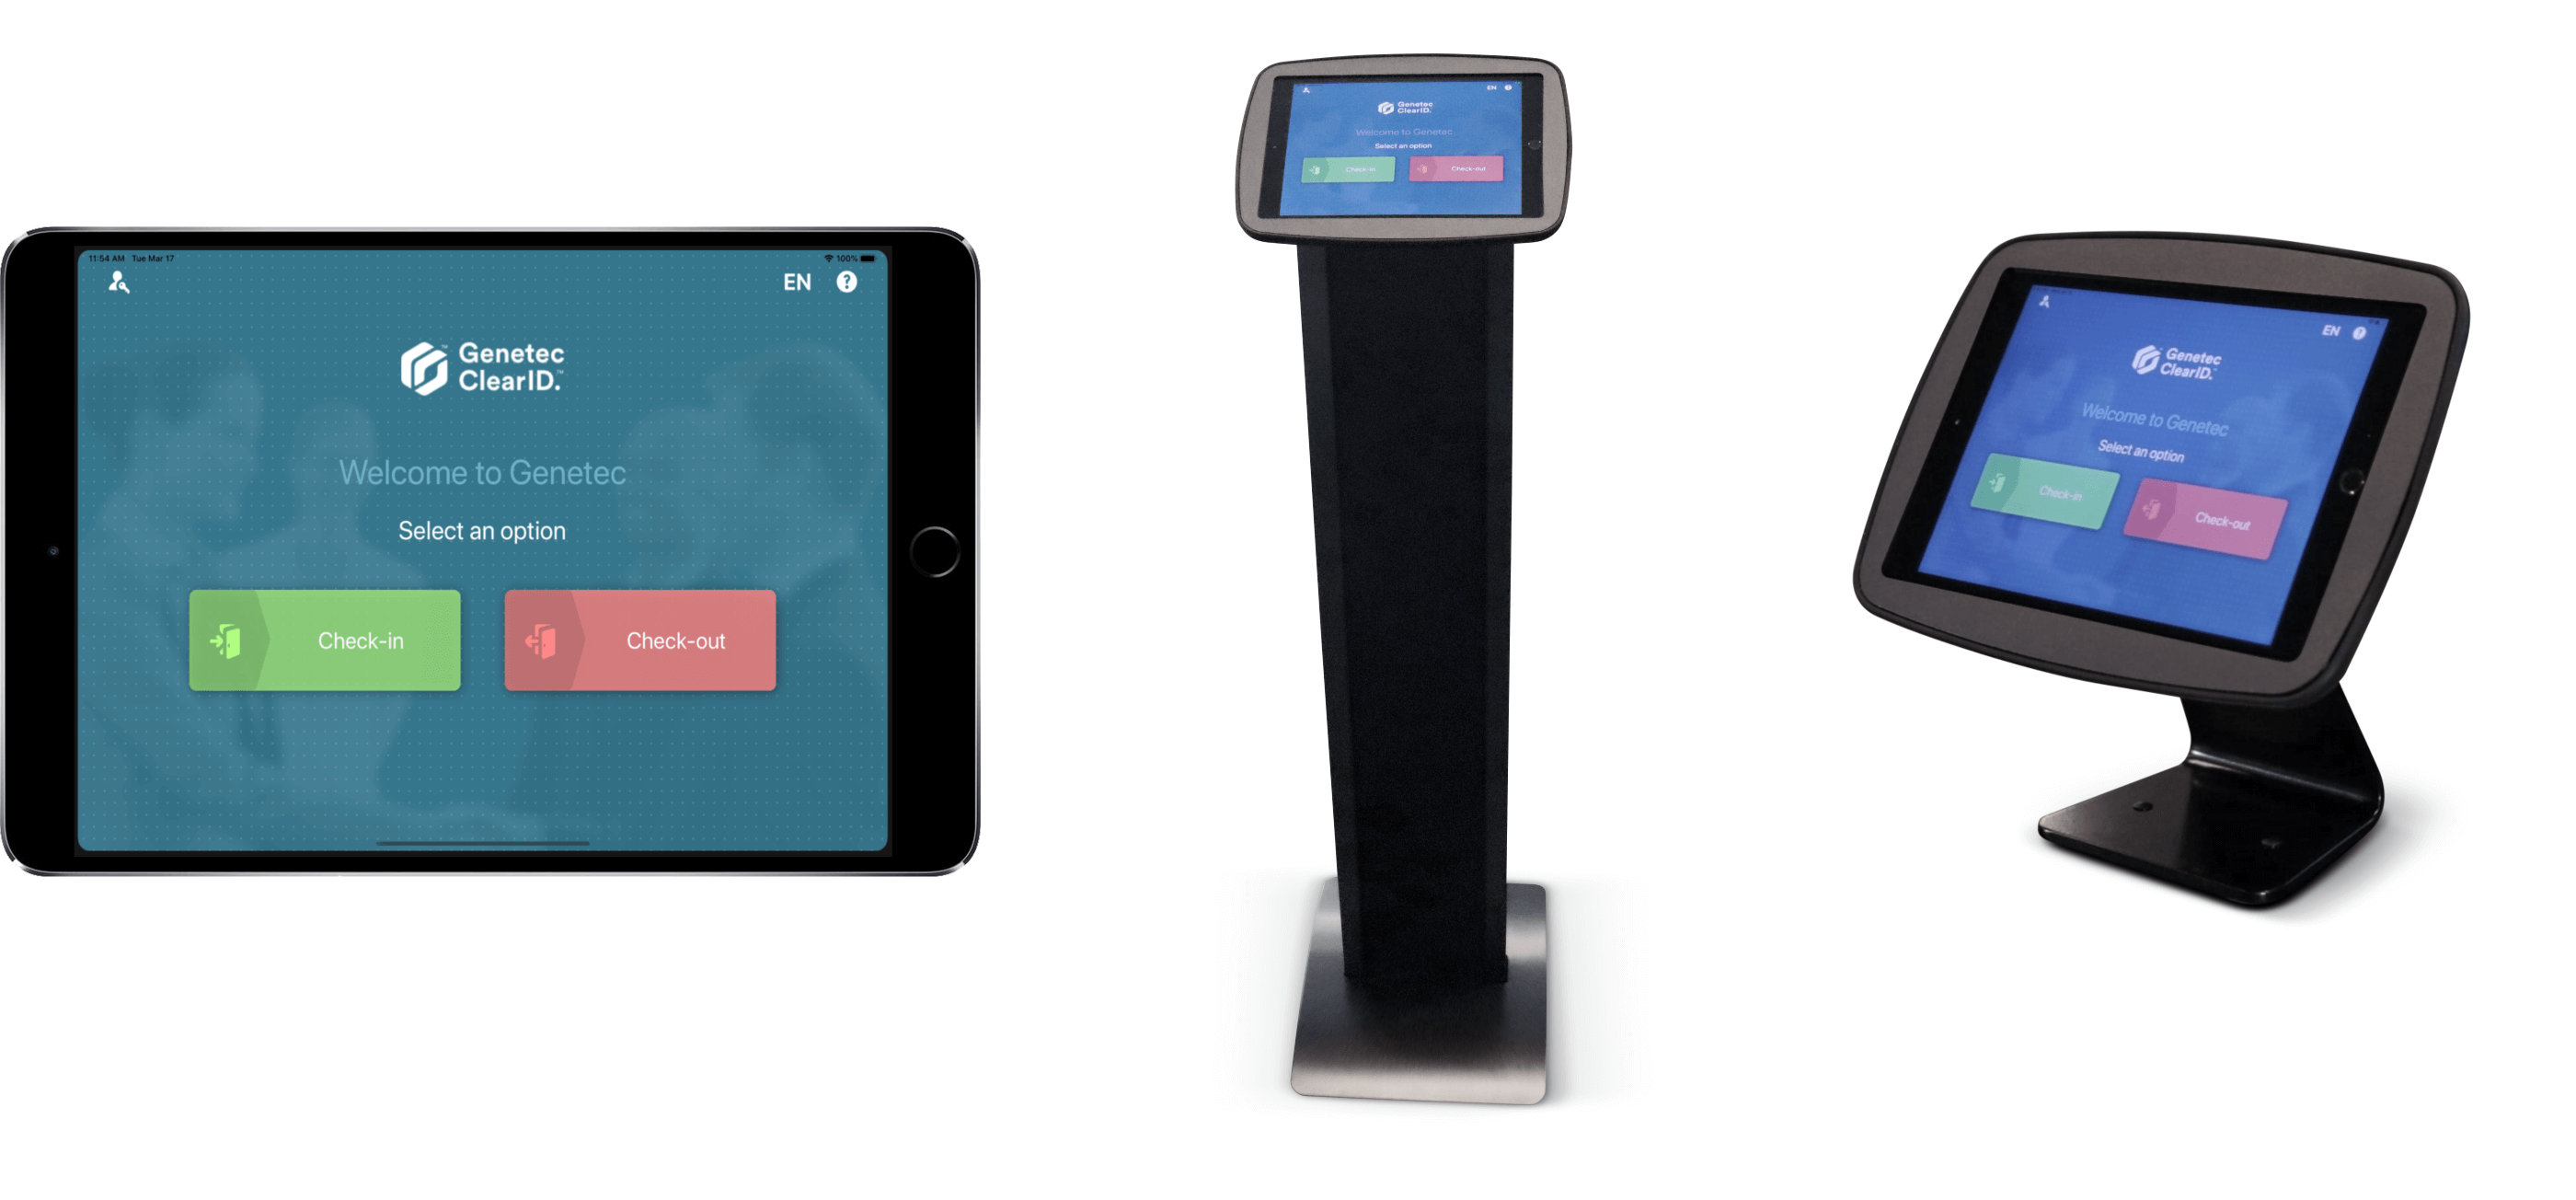 Exemple d'application mobile Genetec ClearID™ Self-Service Kiosk affichant un écran de bienvenue sur un iPad, ainsi que les options de supports de borne au sol et sur table